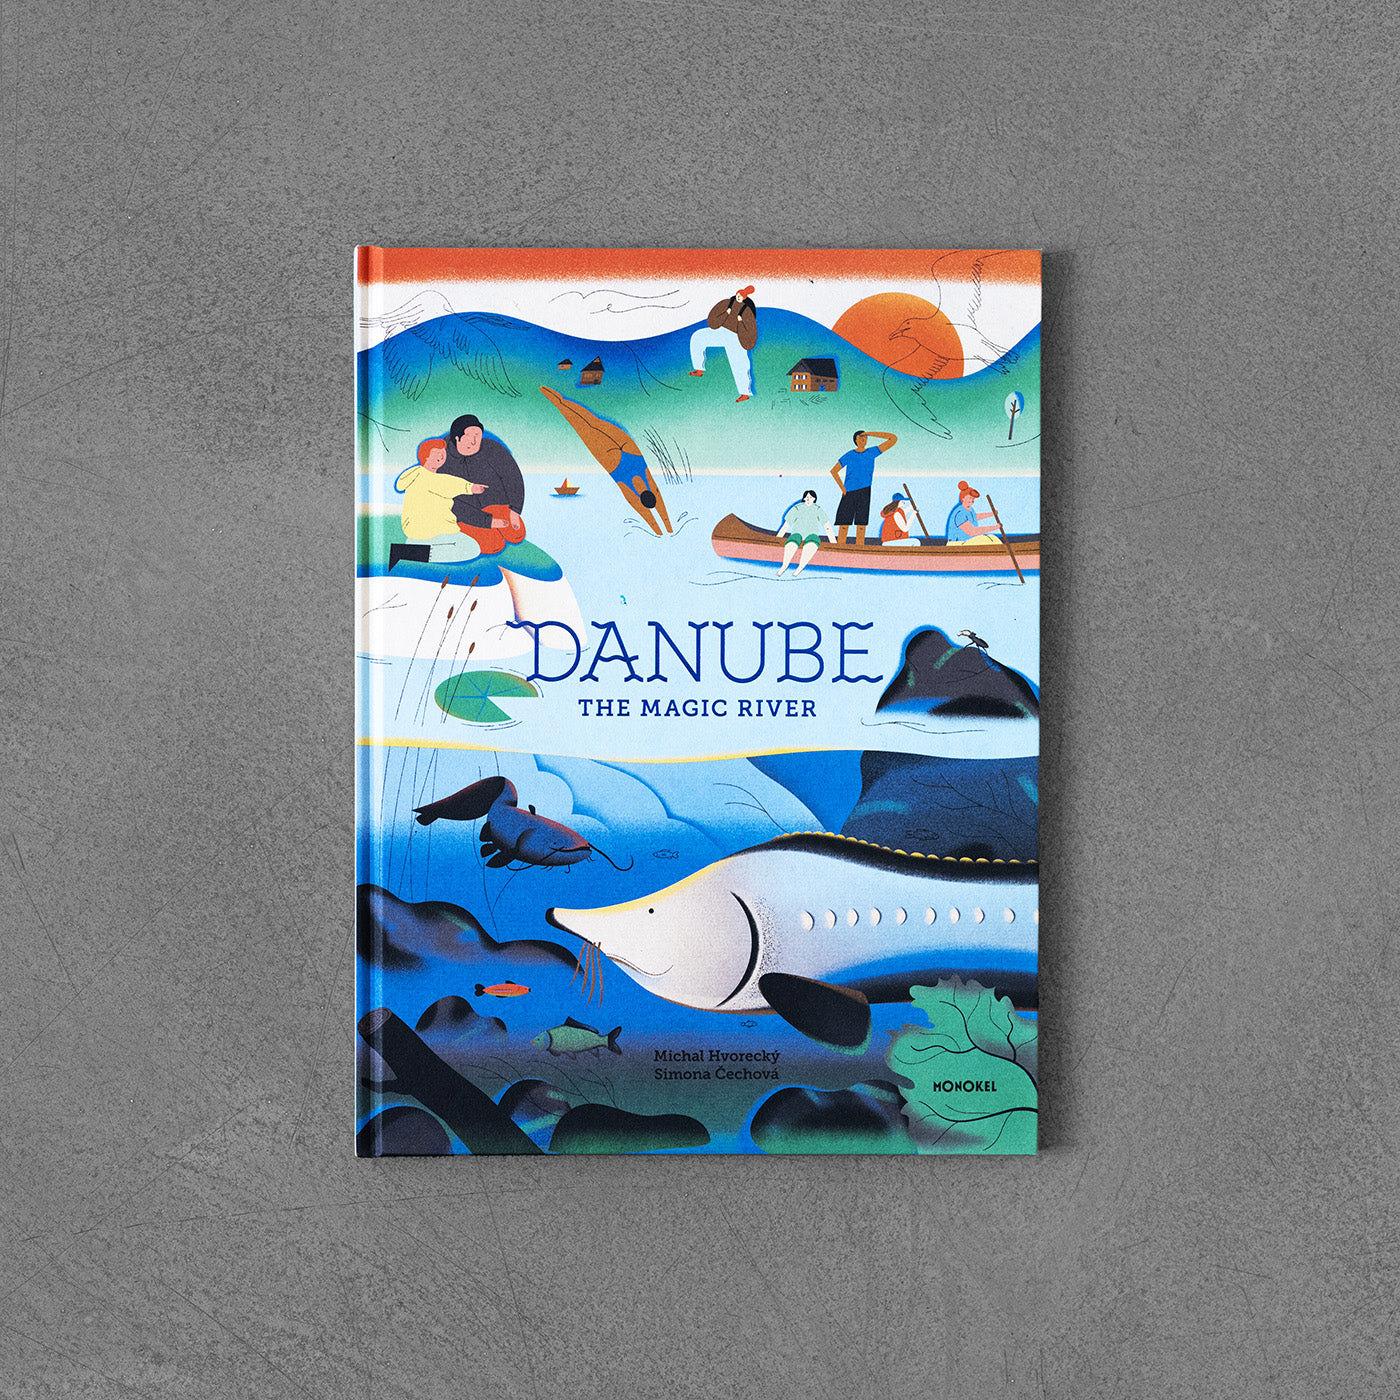 Danube – The Magic River